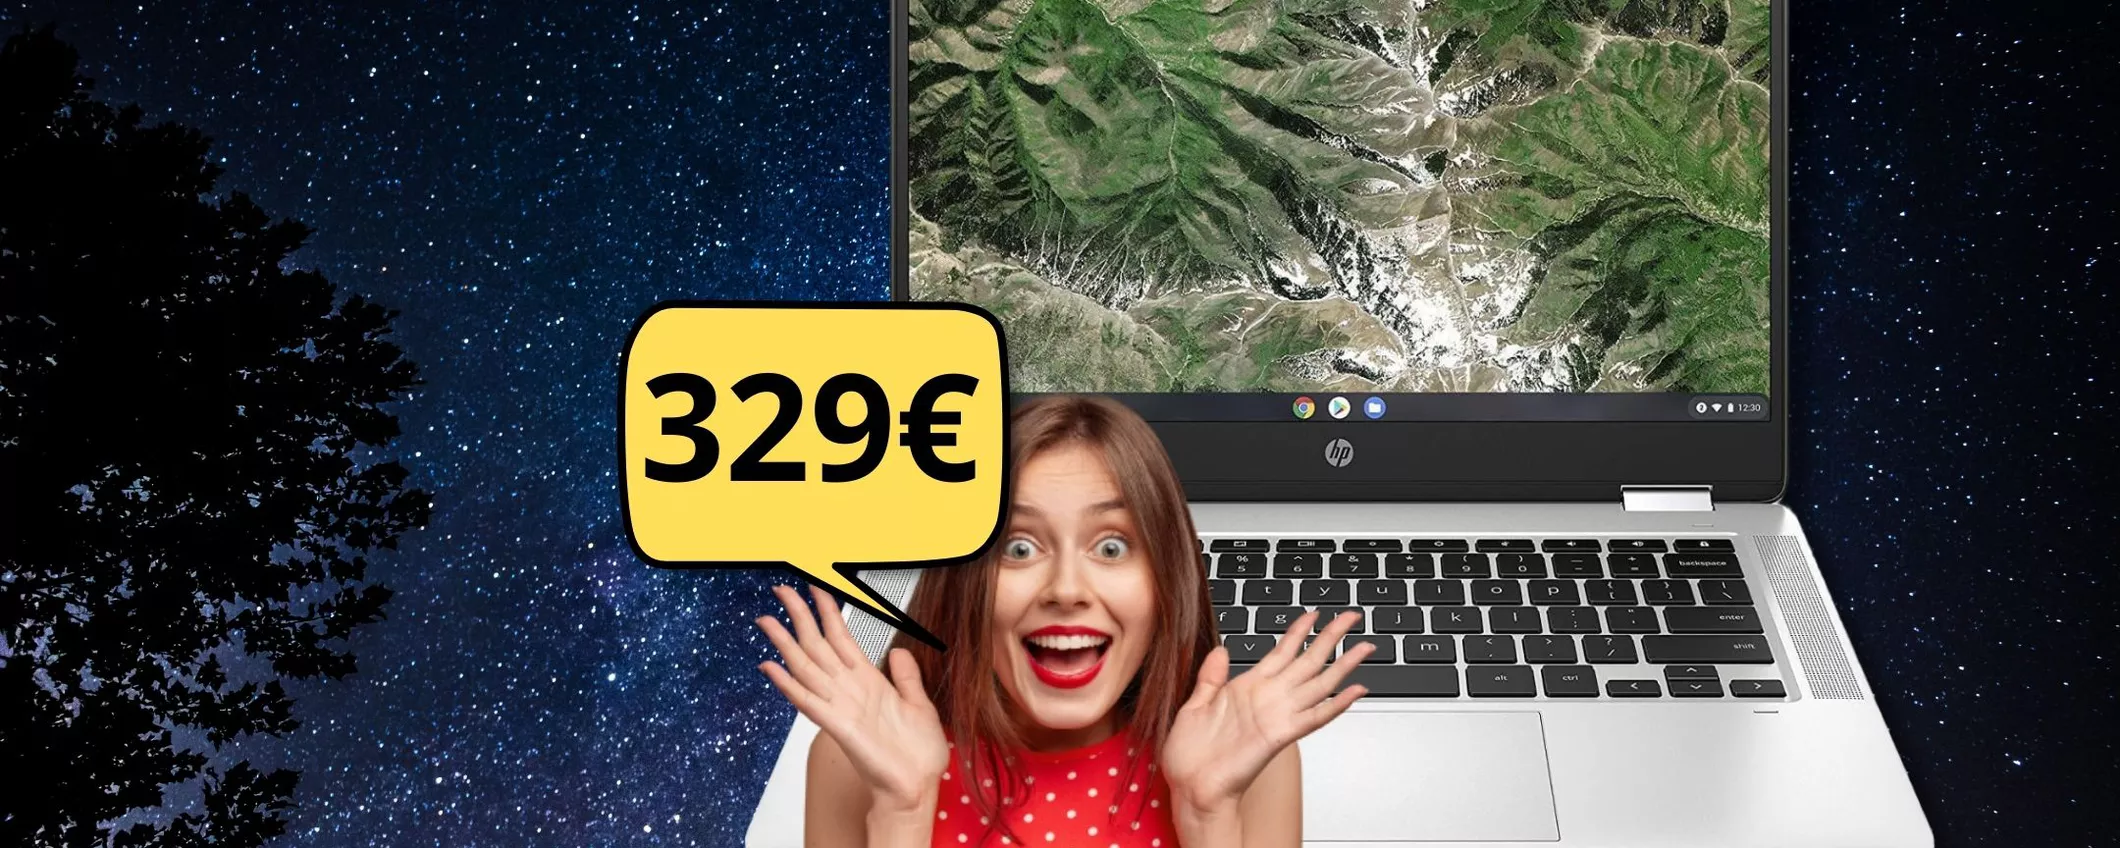 HP Chromebook, c'è il FUORI TUTTO Amazon: se ti sbrighi lo paghi solo 329 euro!